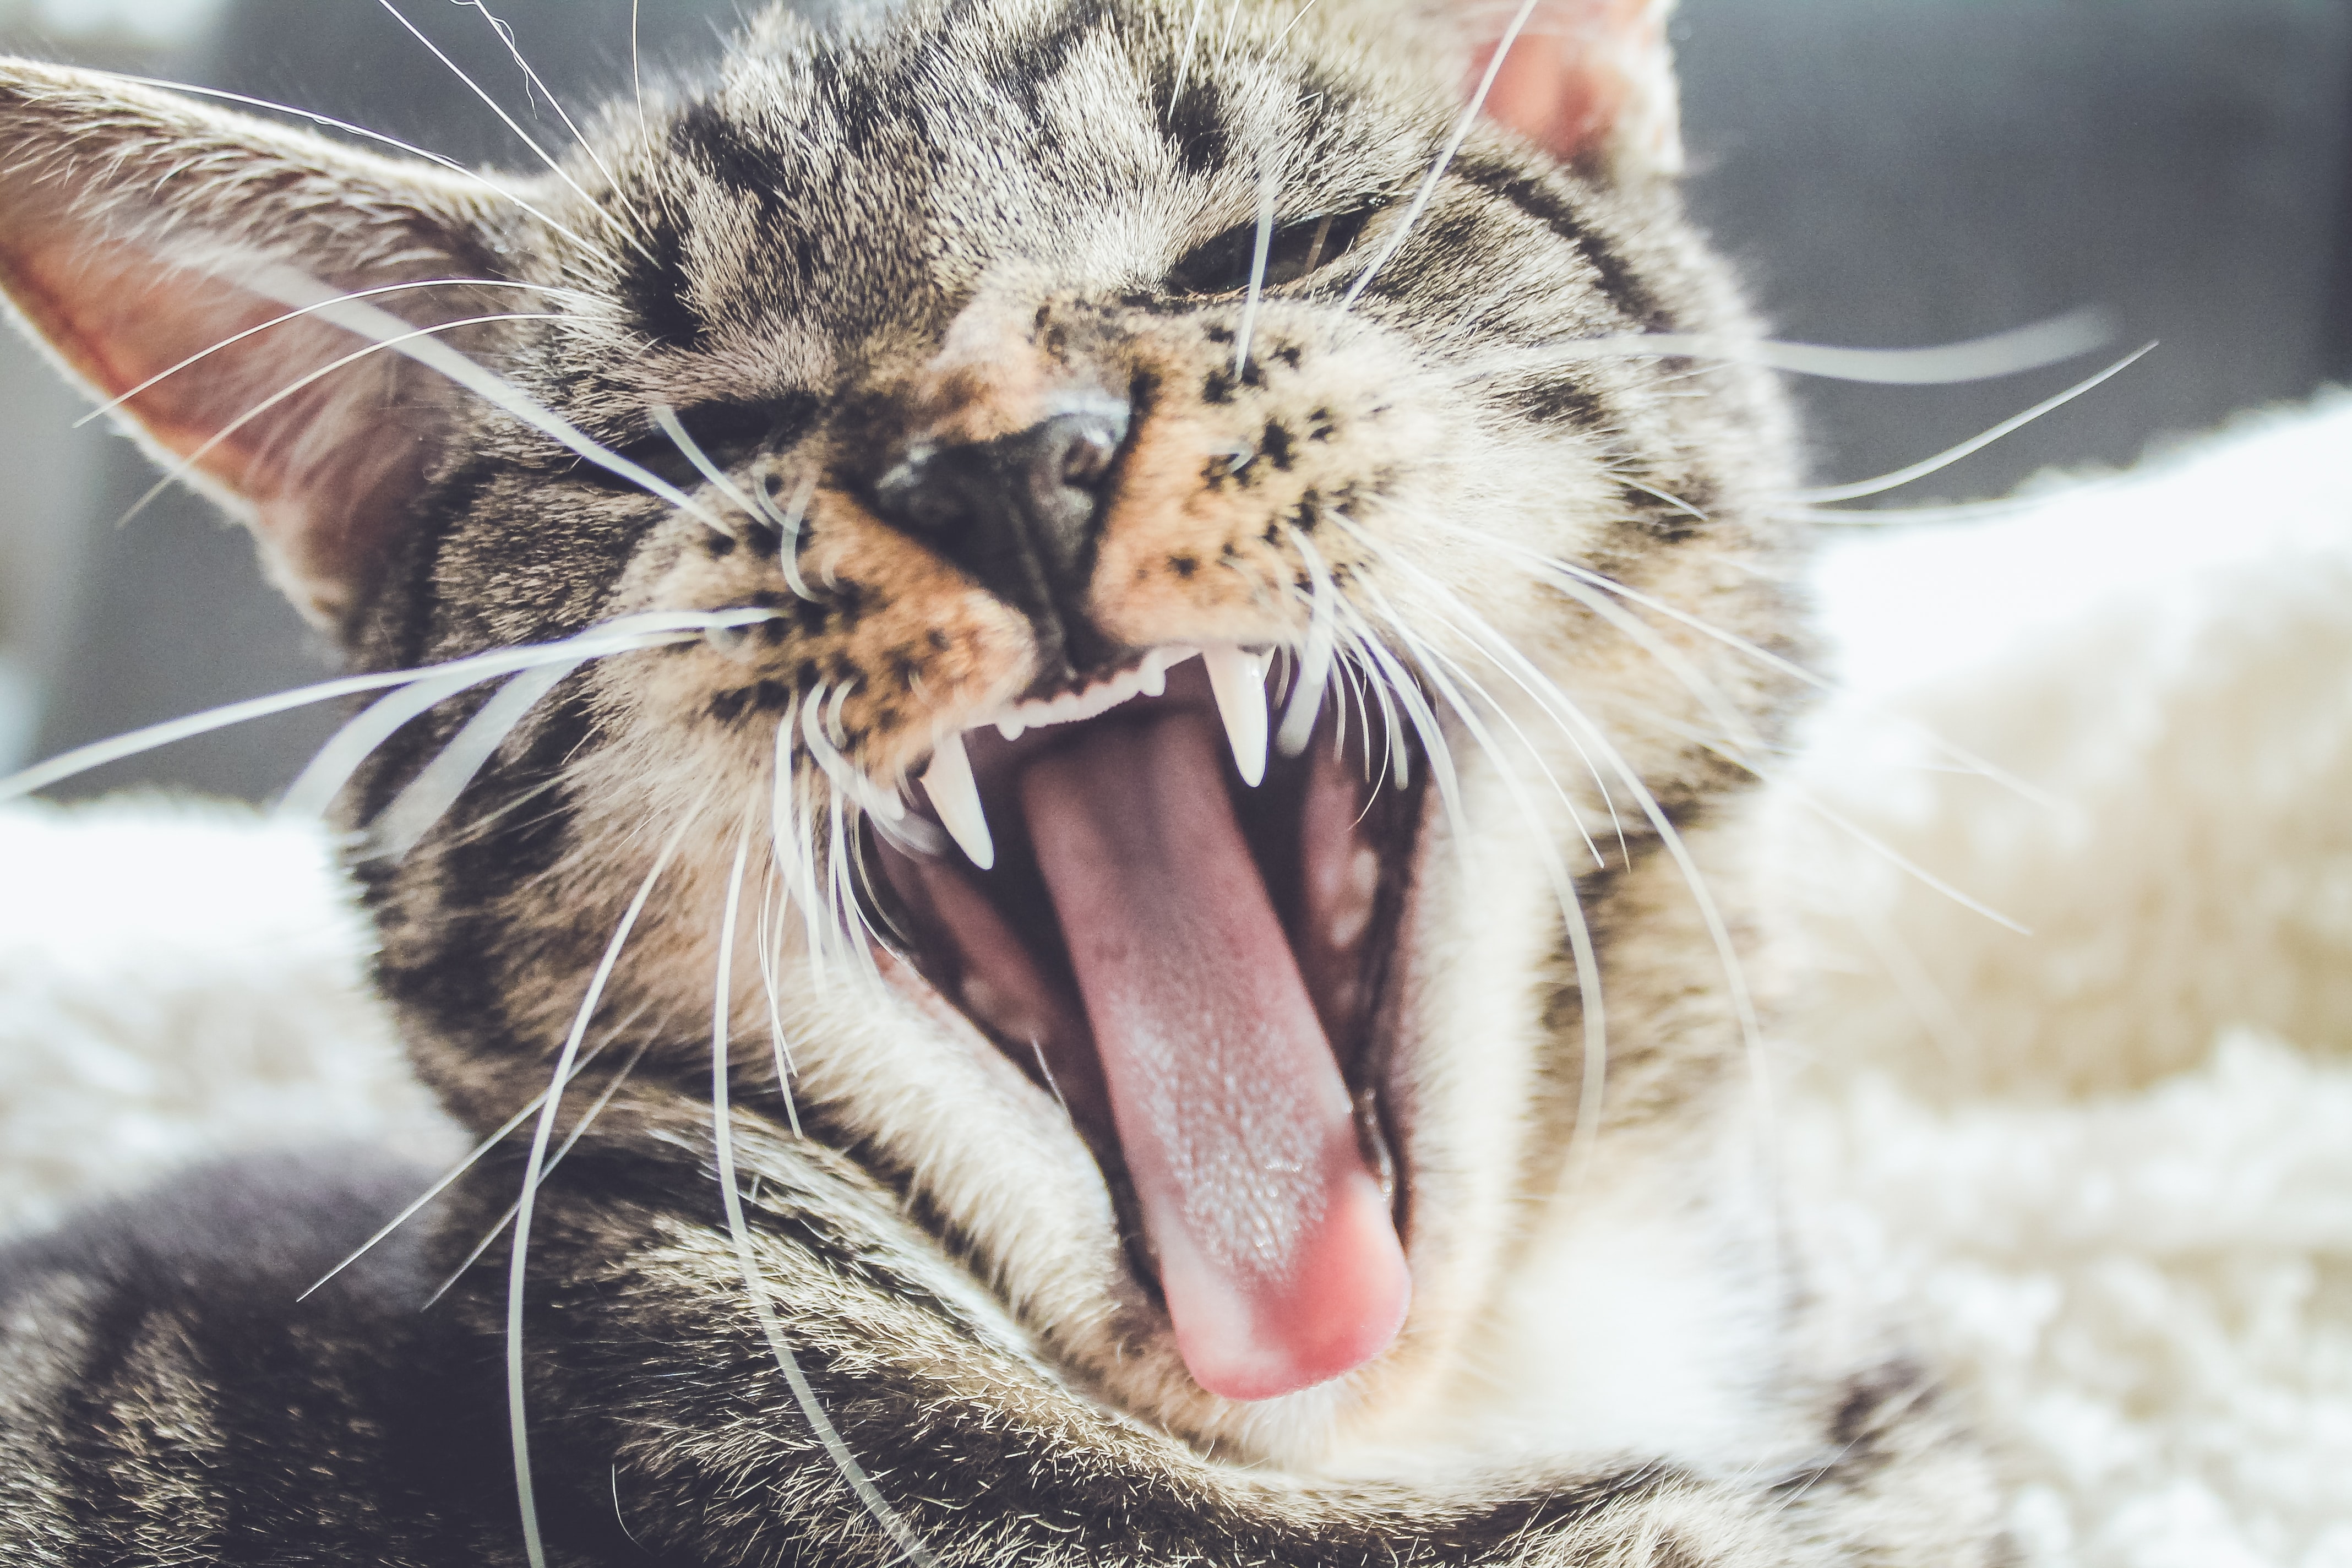 Как правильно глистогонить кошку, чтобы самому не заразиться паразитами, —  объясняет ветеринар | DOCTORPITER